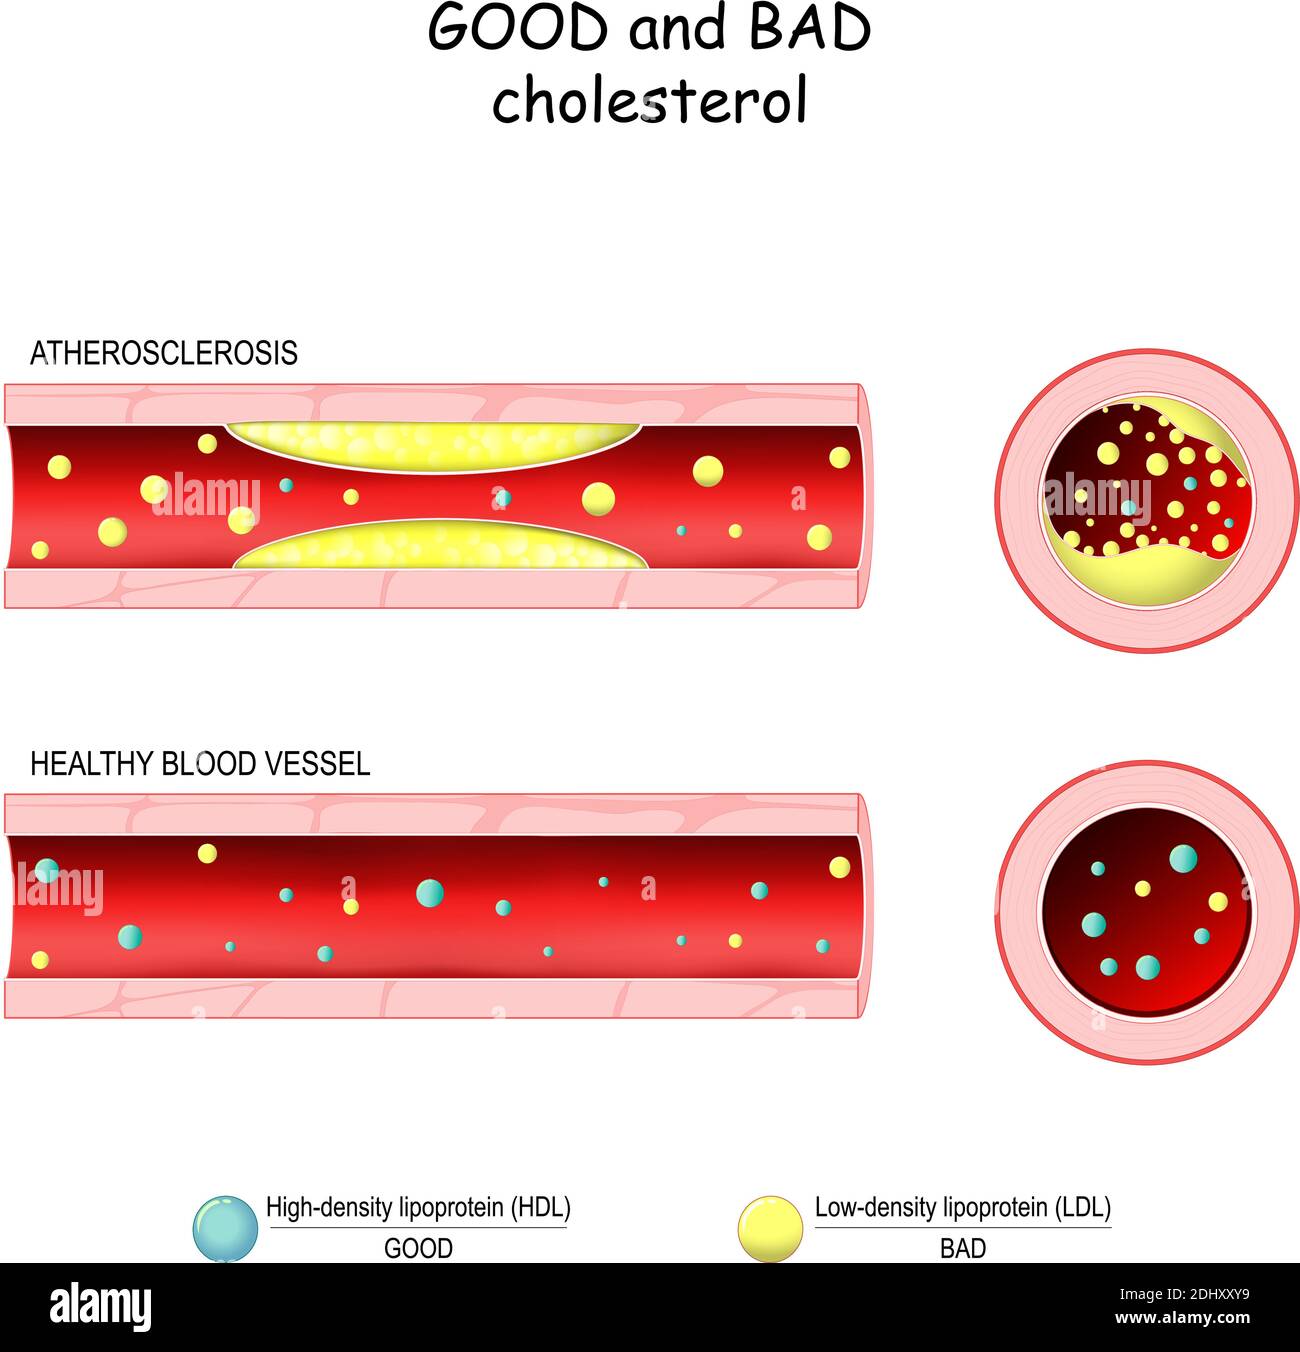 Bon (HDL) et mauvais (LDL) cholestérol. Vaisseau sanguin sain et athérosclérose. Coupe transversale du vaisseau sanguin. Lipoprotéine de faible densité et de haute densité Illustration de Vecteur